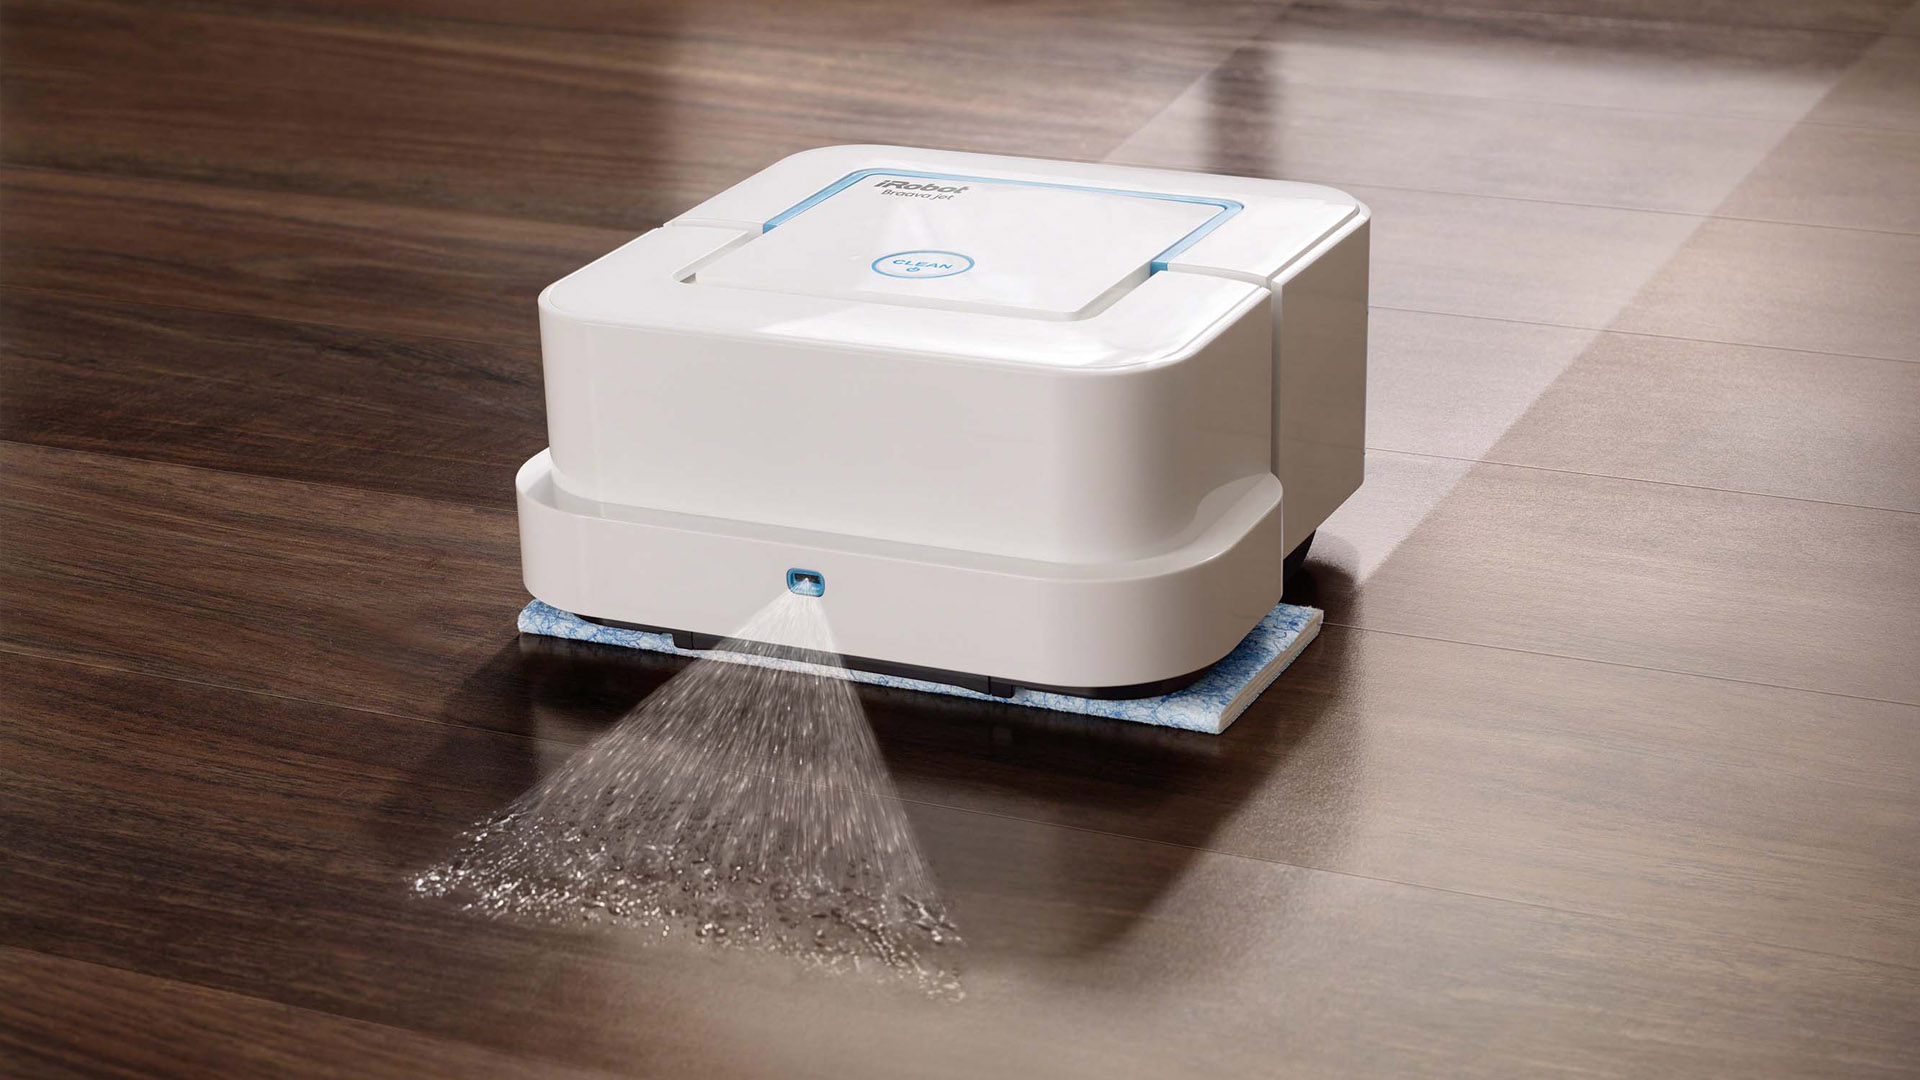 El dispositivo creado por iRobot es capaz de acabar con la suciedad cotidiana en habitaciones de hasta 25 metros cuadrados